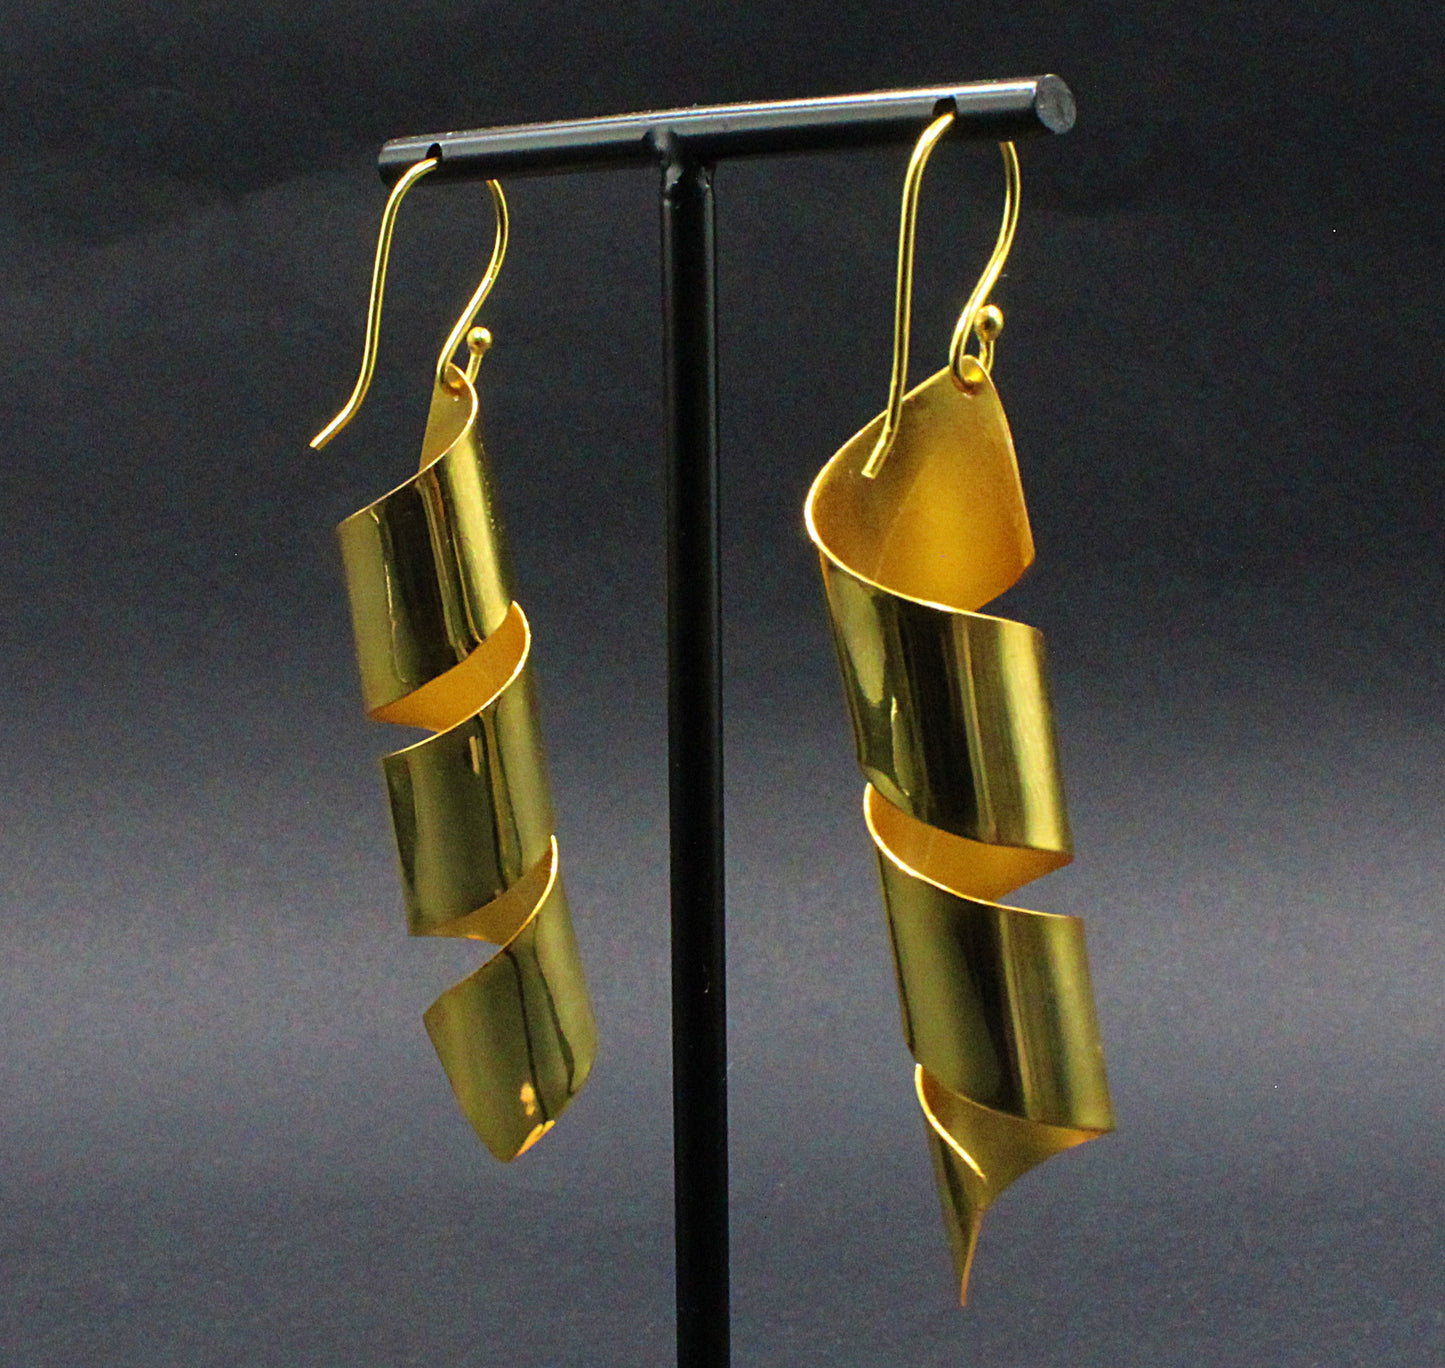 VIRUTA earrings plated in 18kt gold